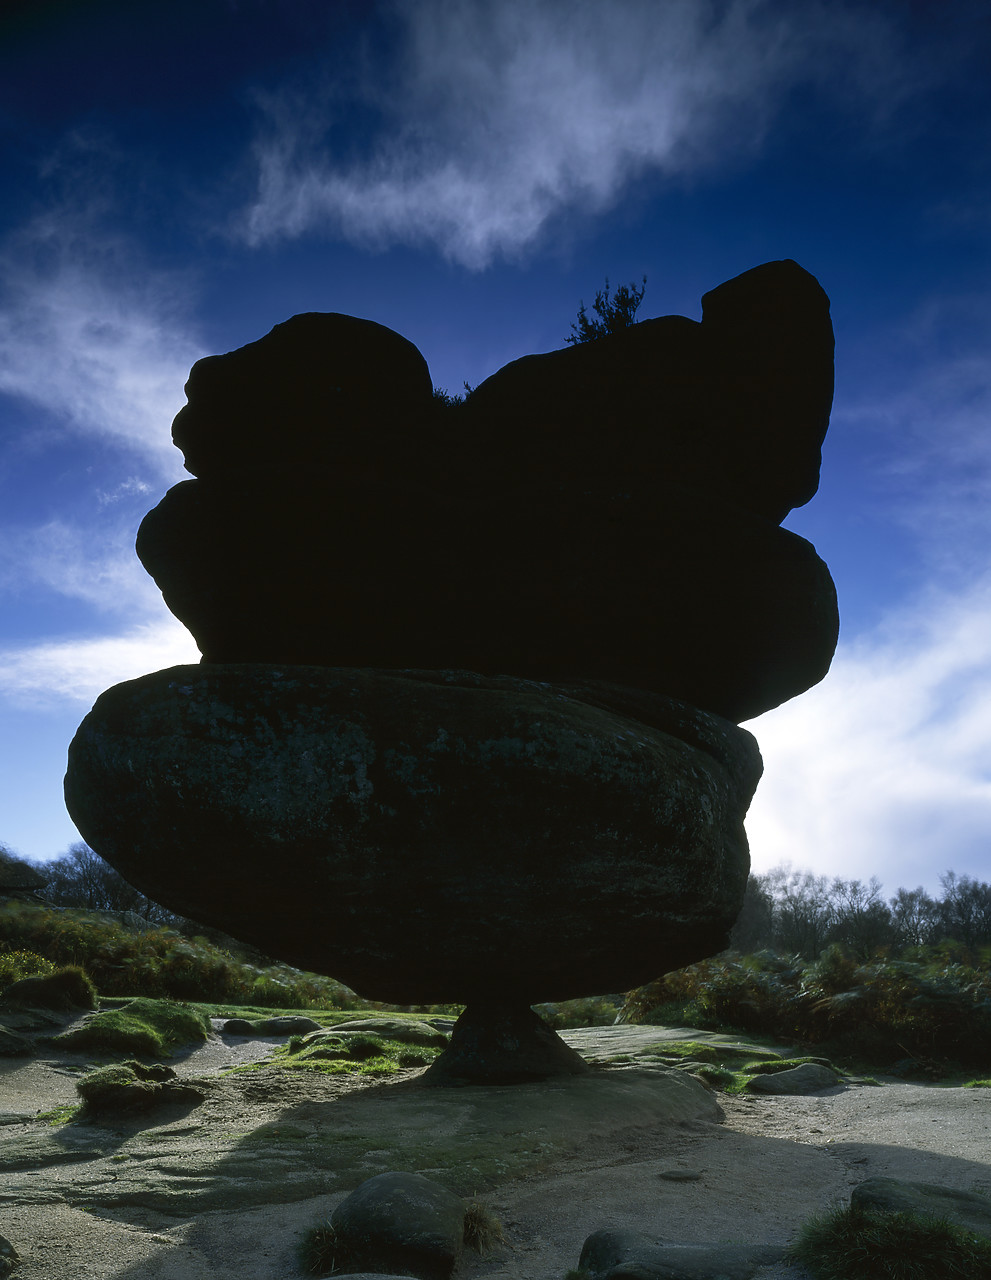 #020776-1 - Idol Rock, Brimham Rocks, North Yorkshire, England